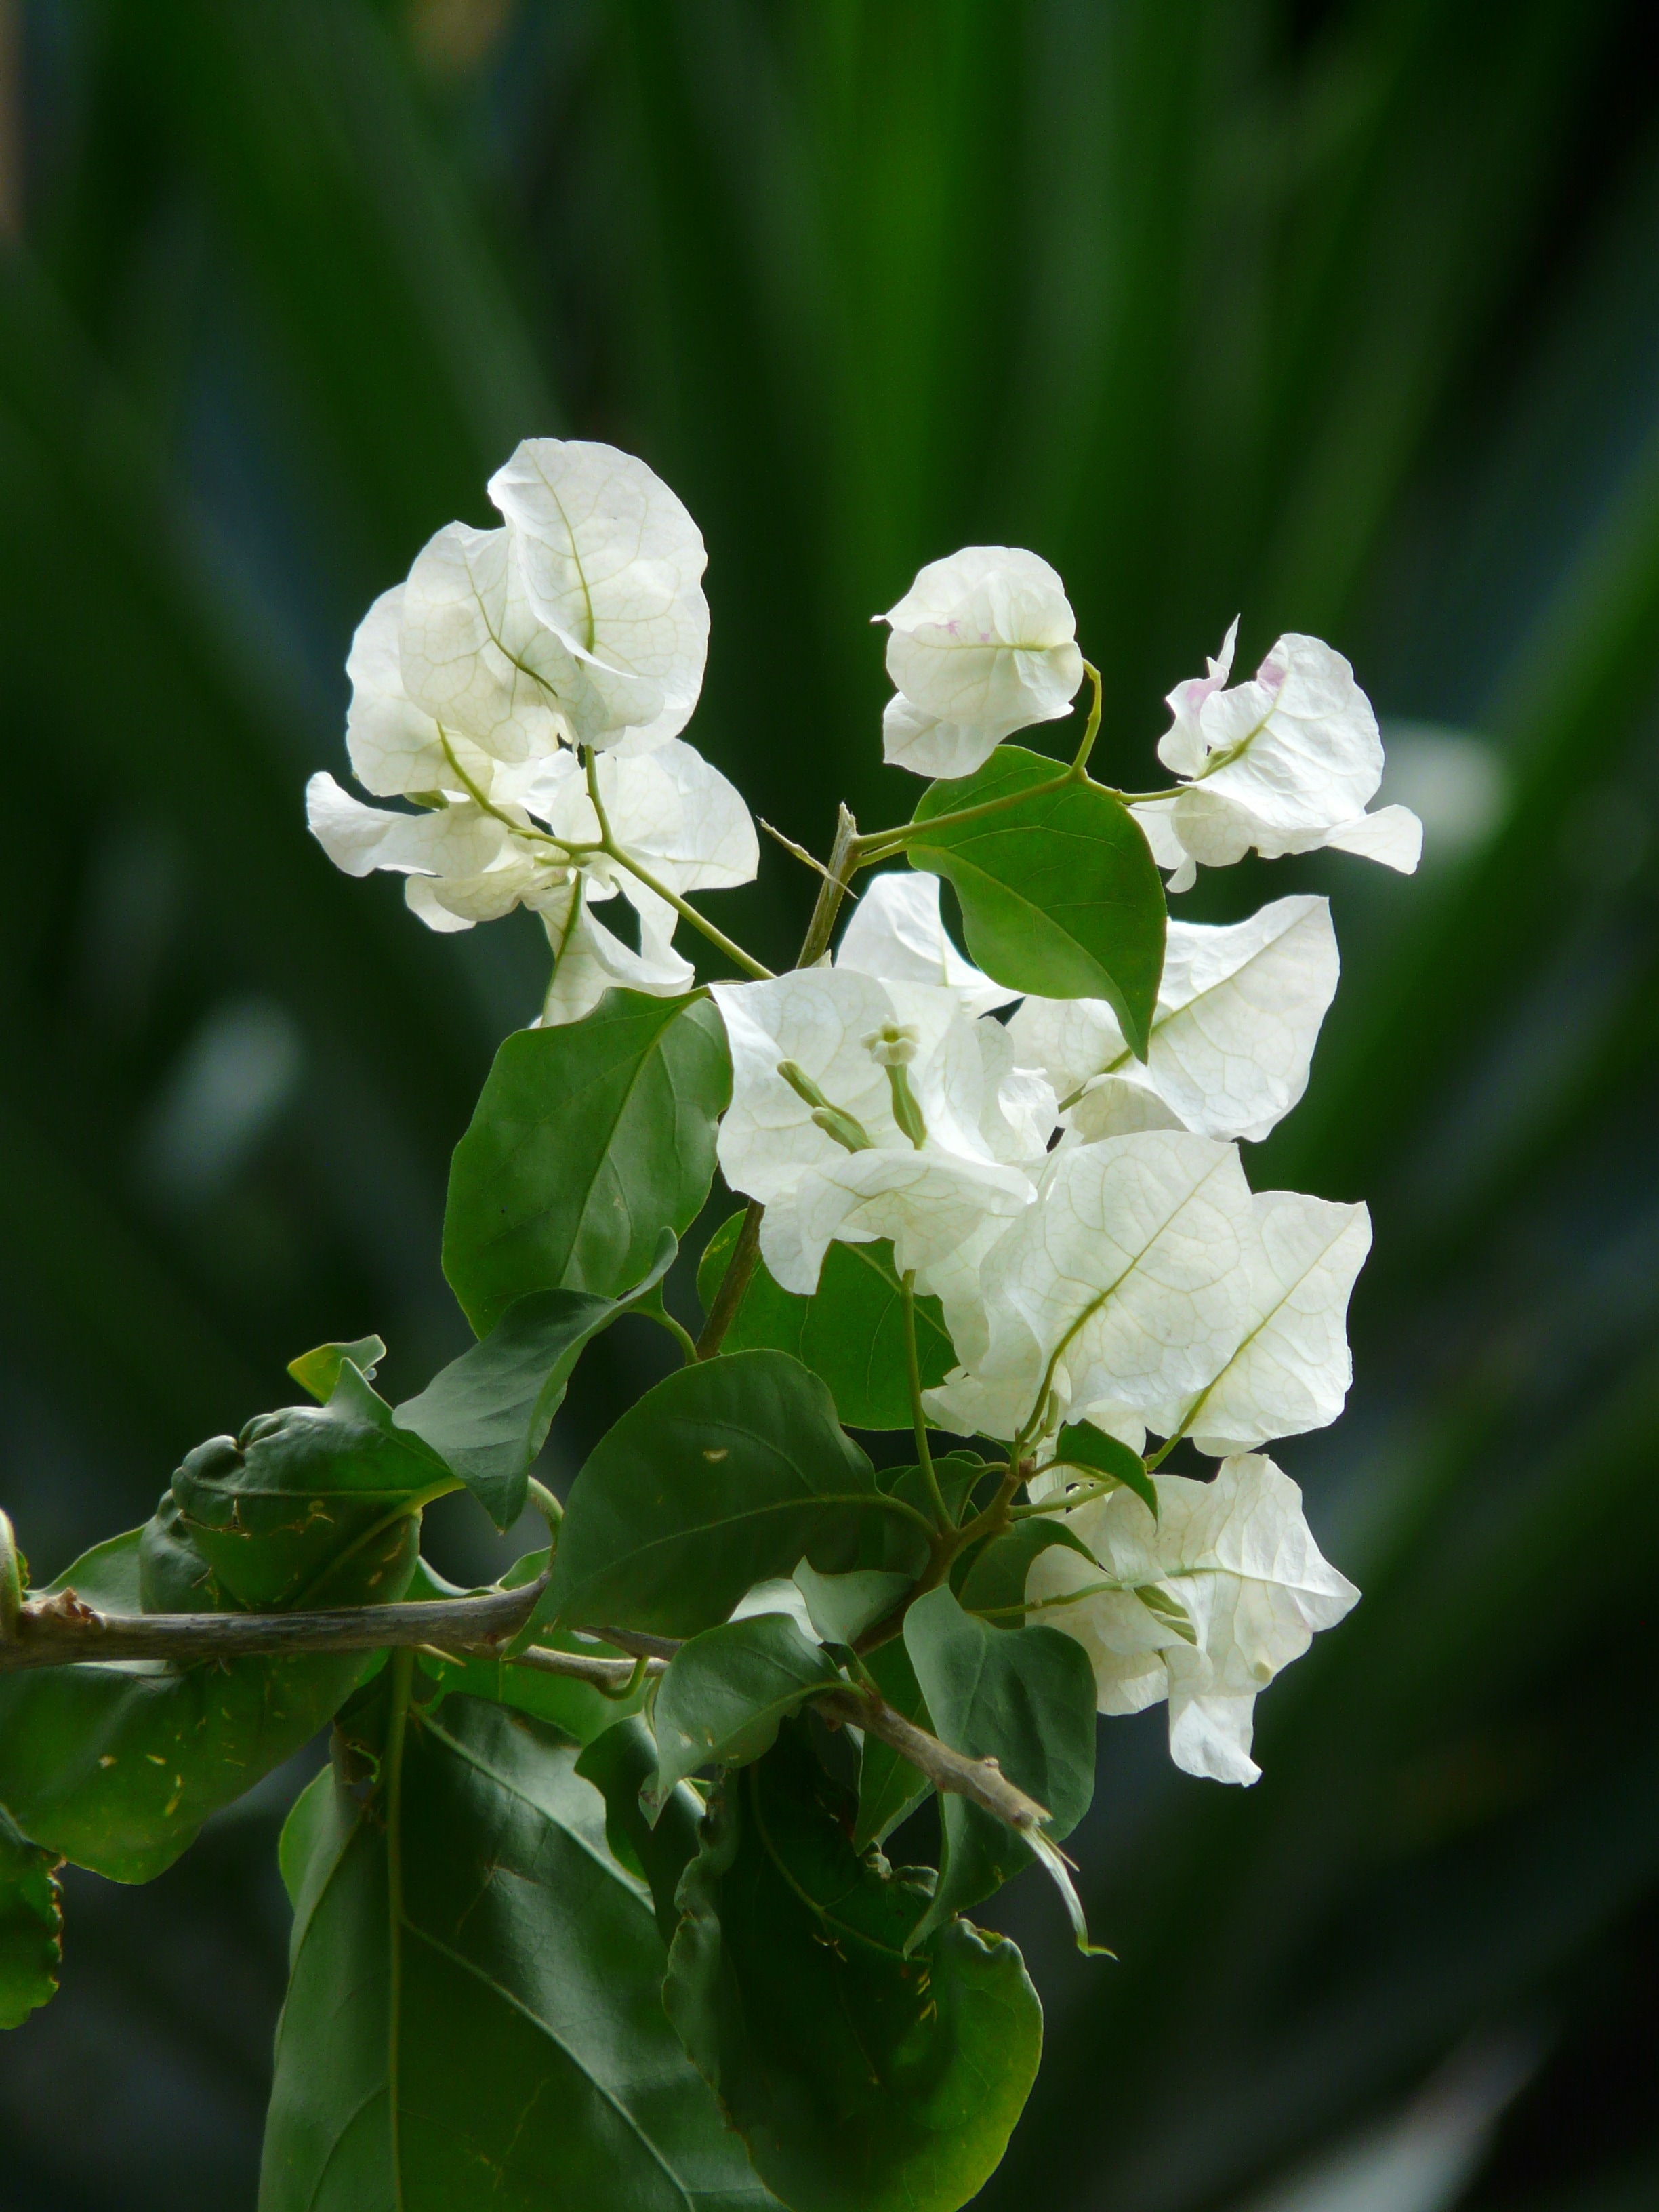 white clustered petal flower